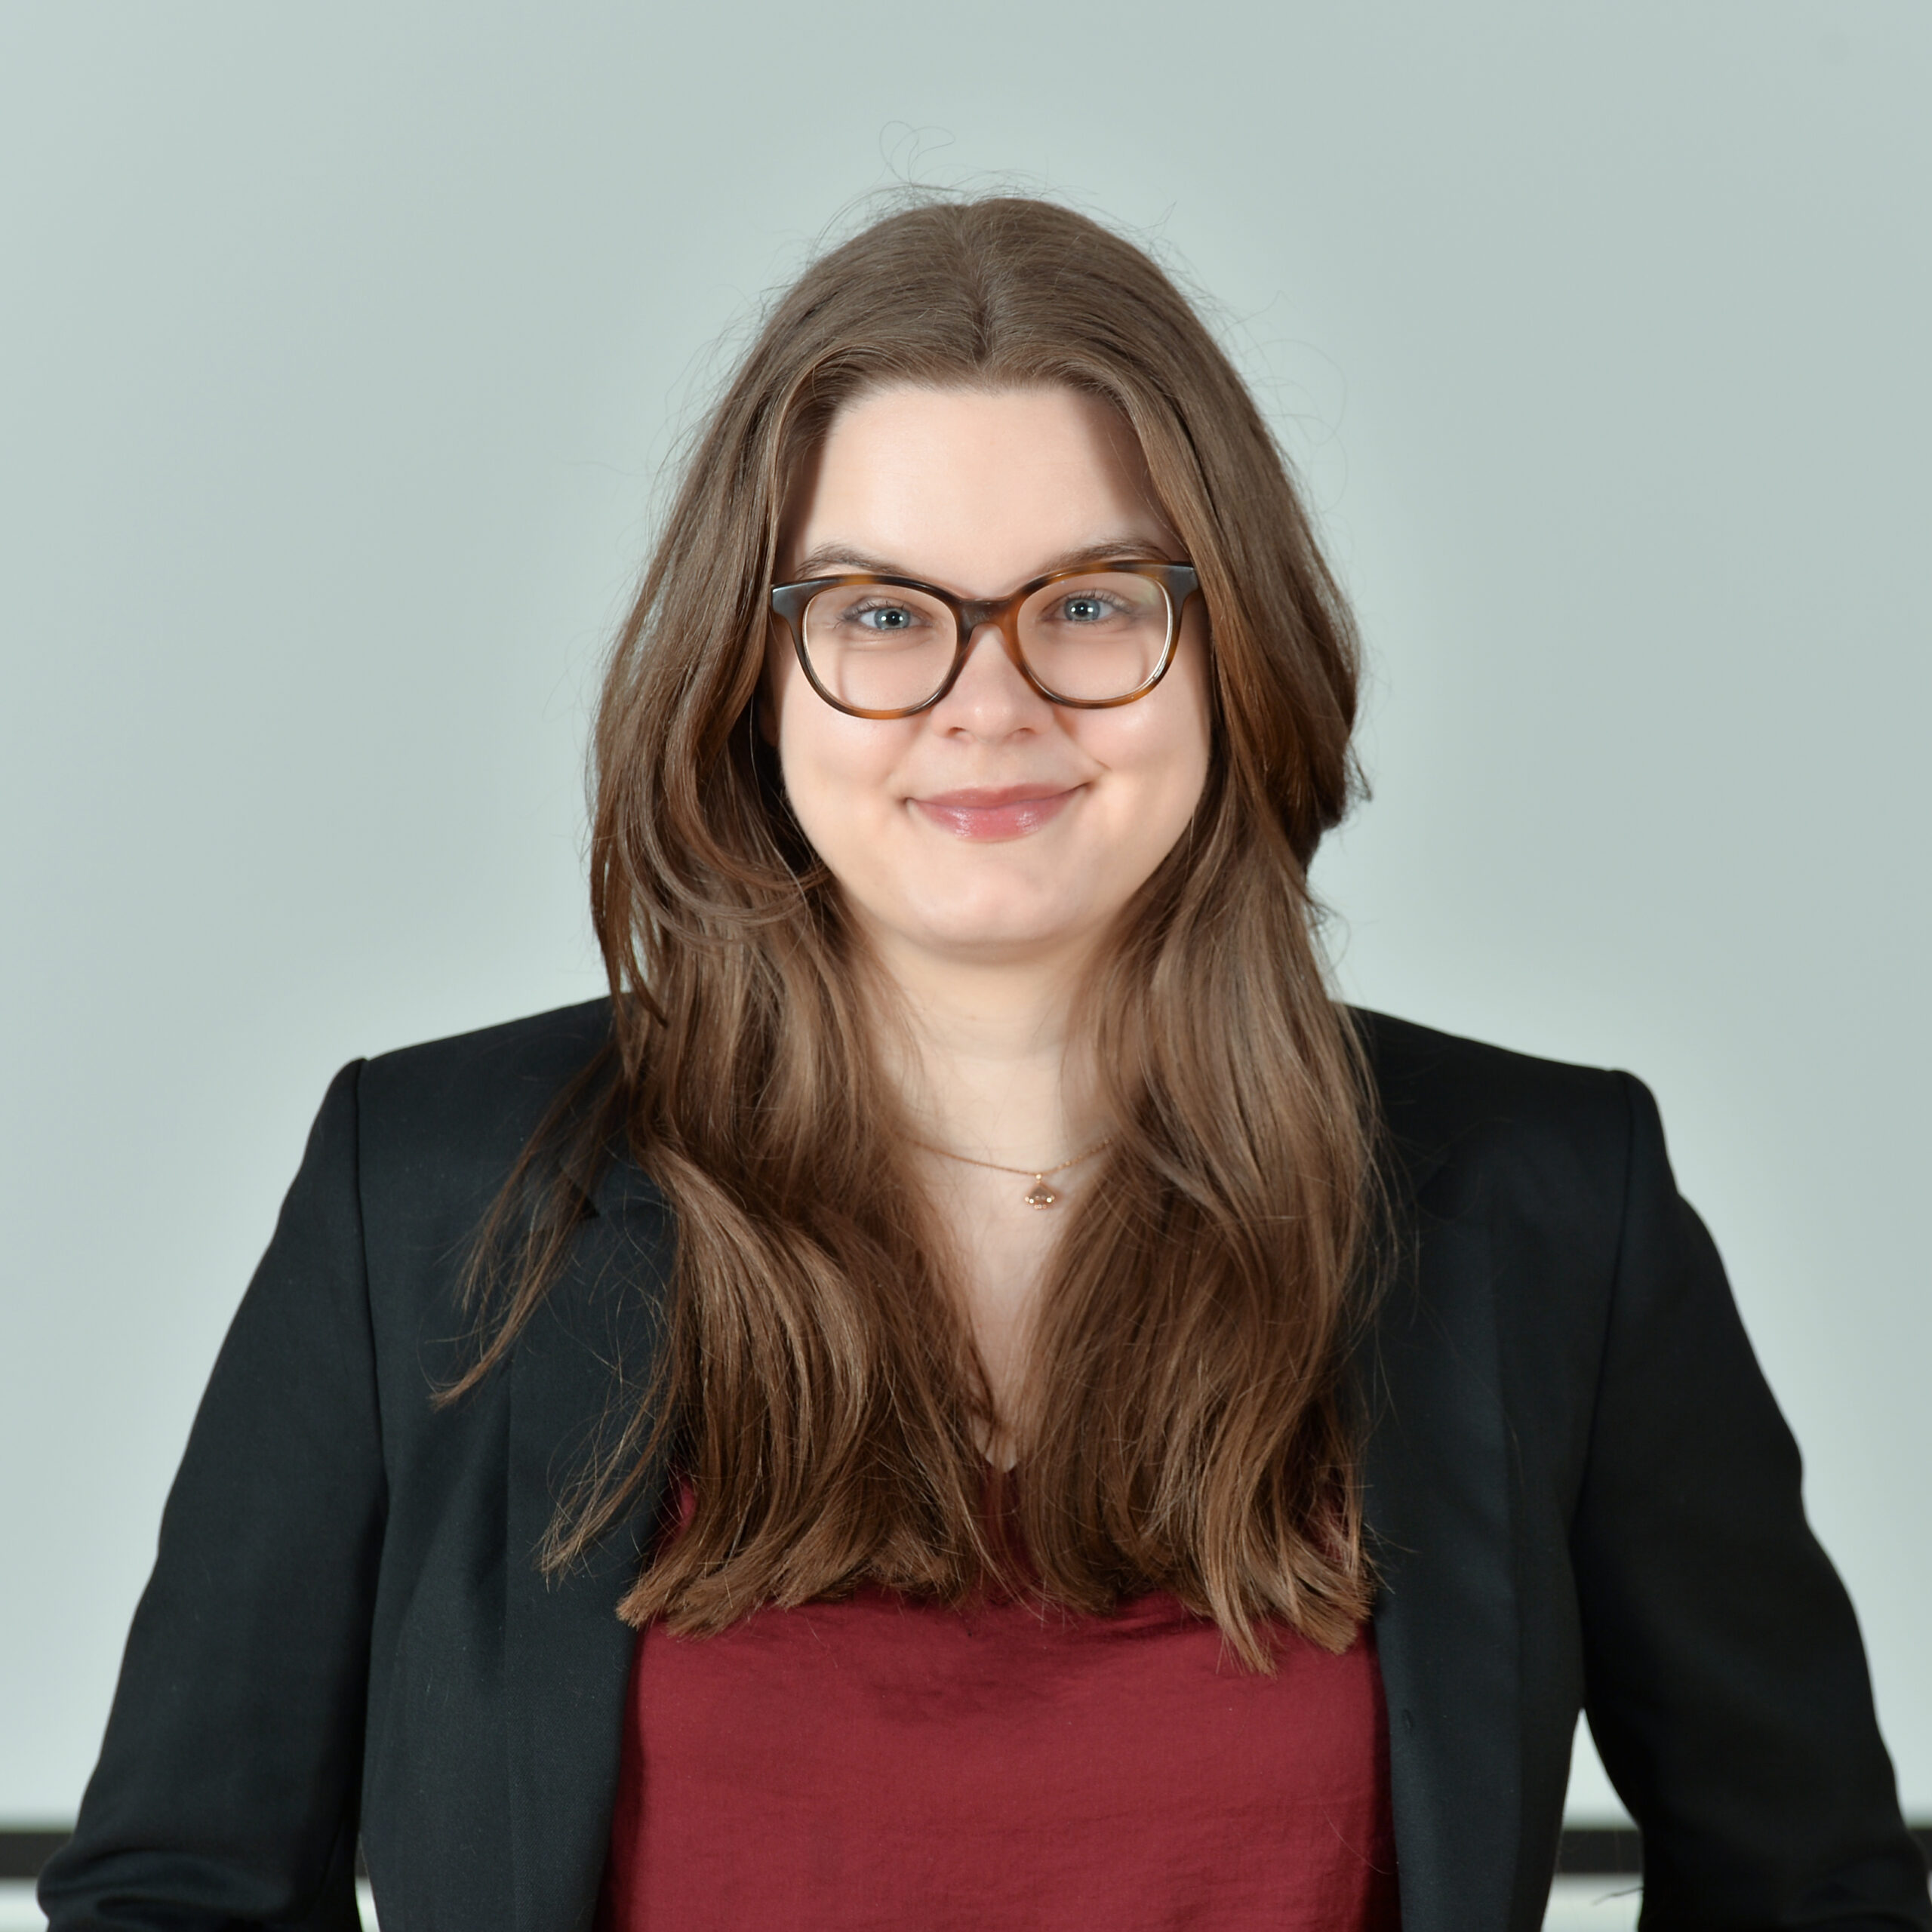 Profilbild von Annemarie Pläschke in einem dunkelroten Top und dunkelgrauen Blazer.